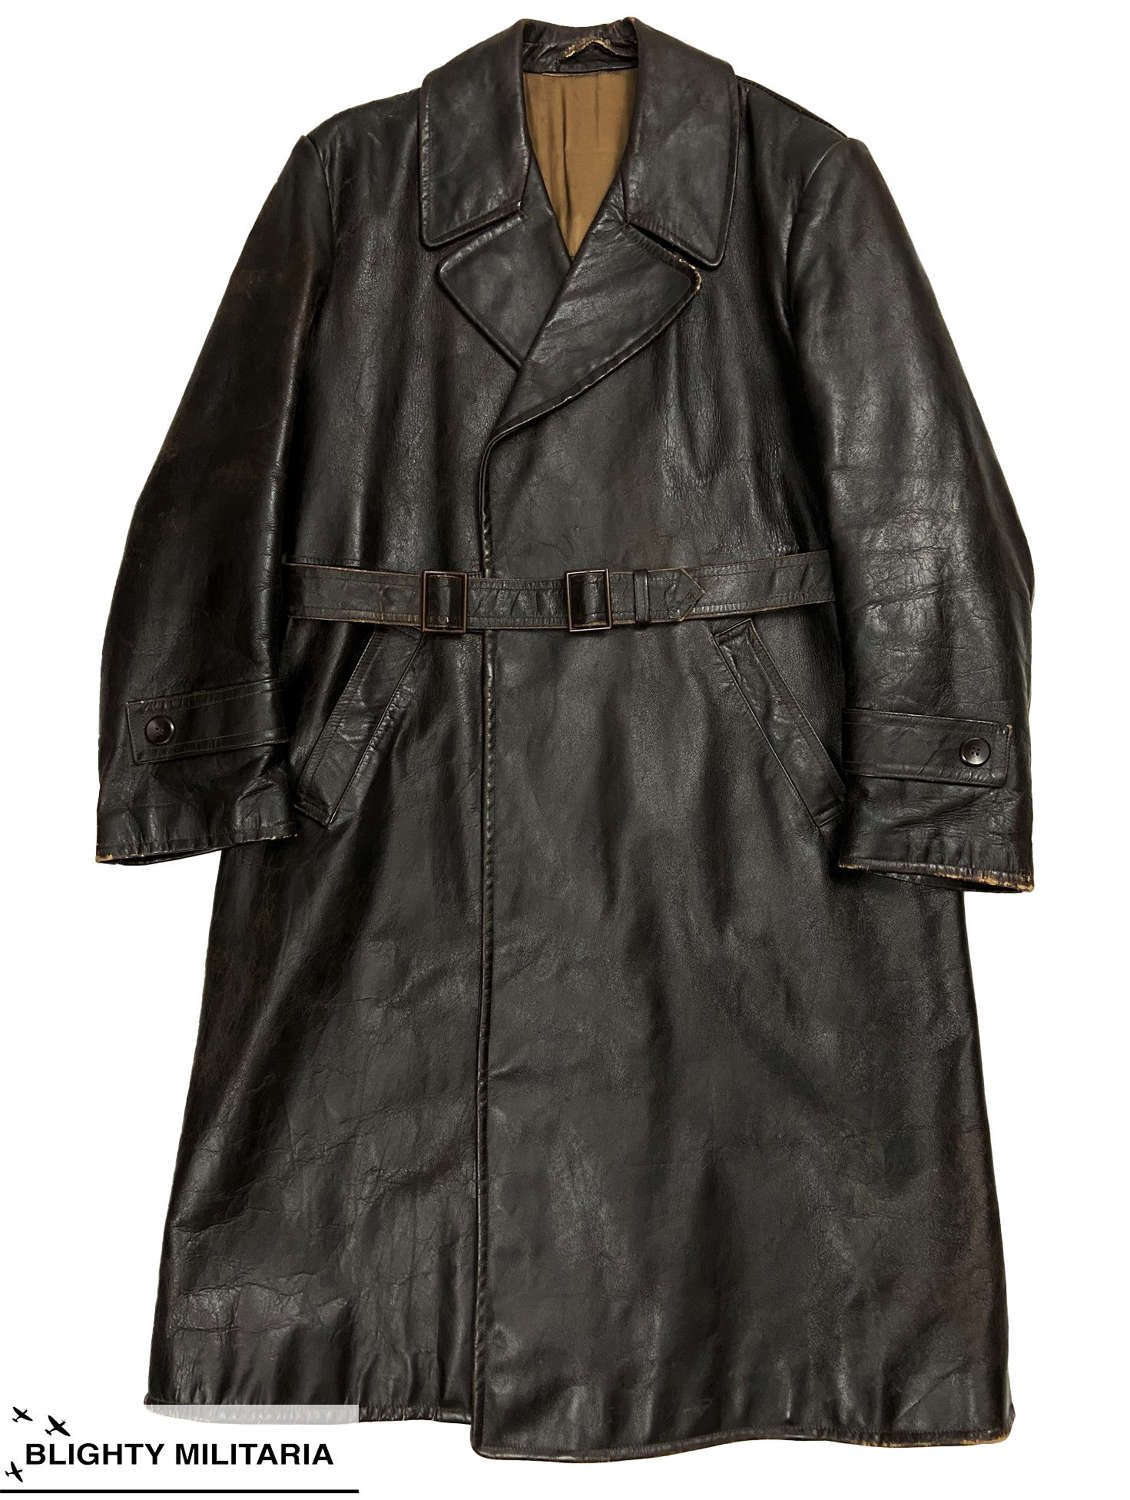 Original 1940s German Leather Overcoat